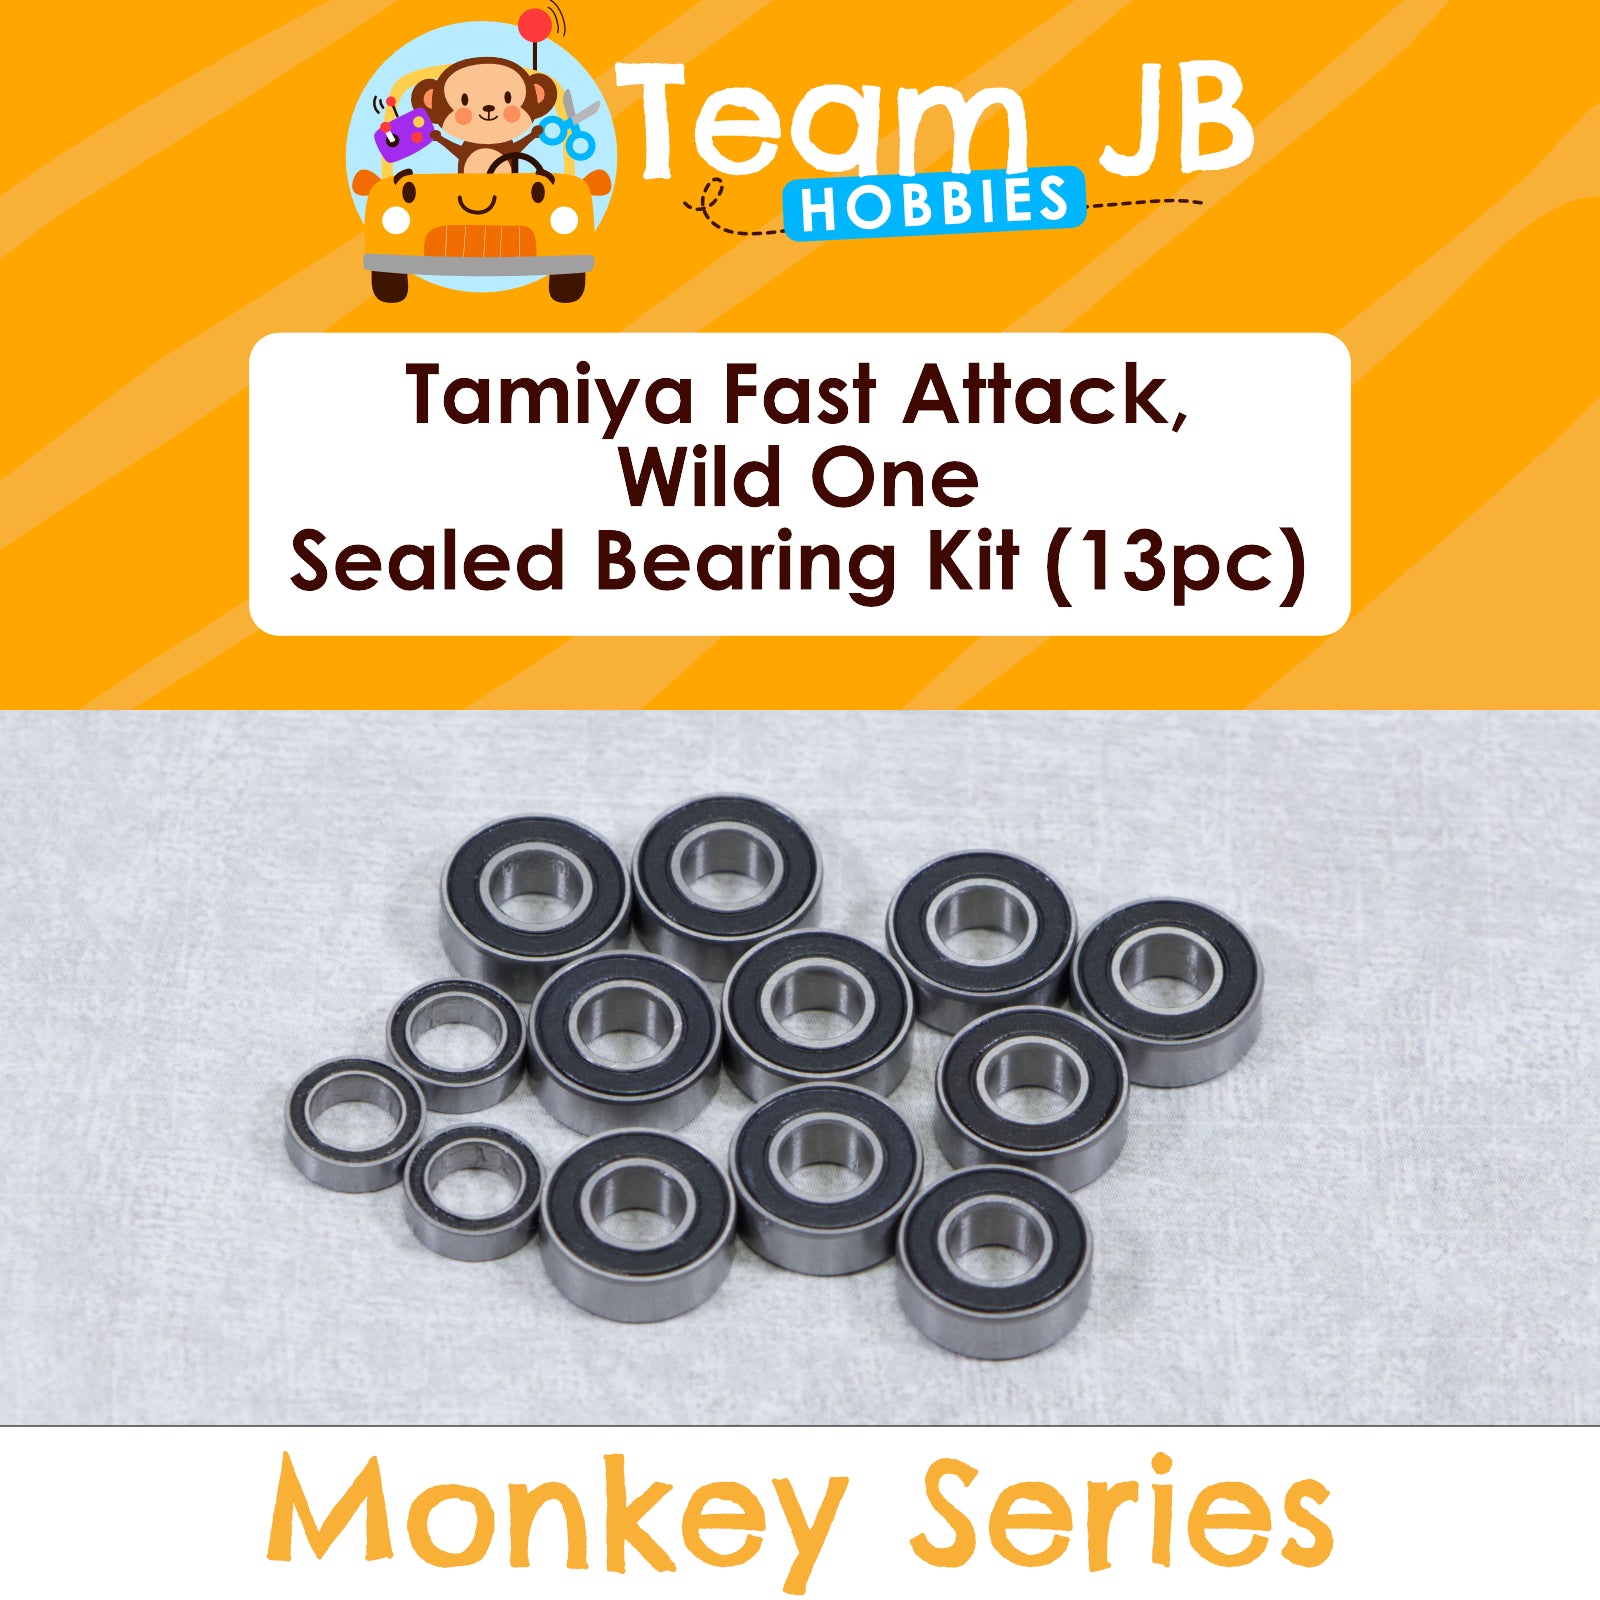 Tamiya Fast Attack, Wild One - Sealed Bearing Kit